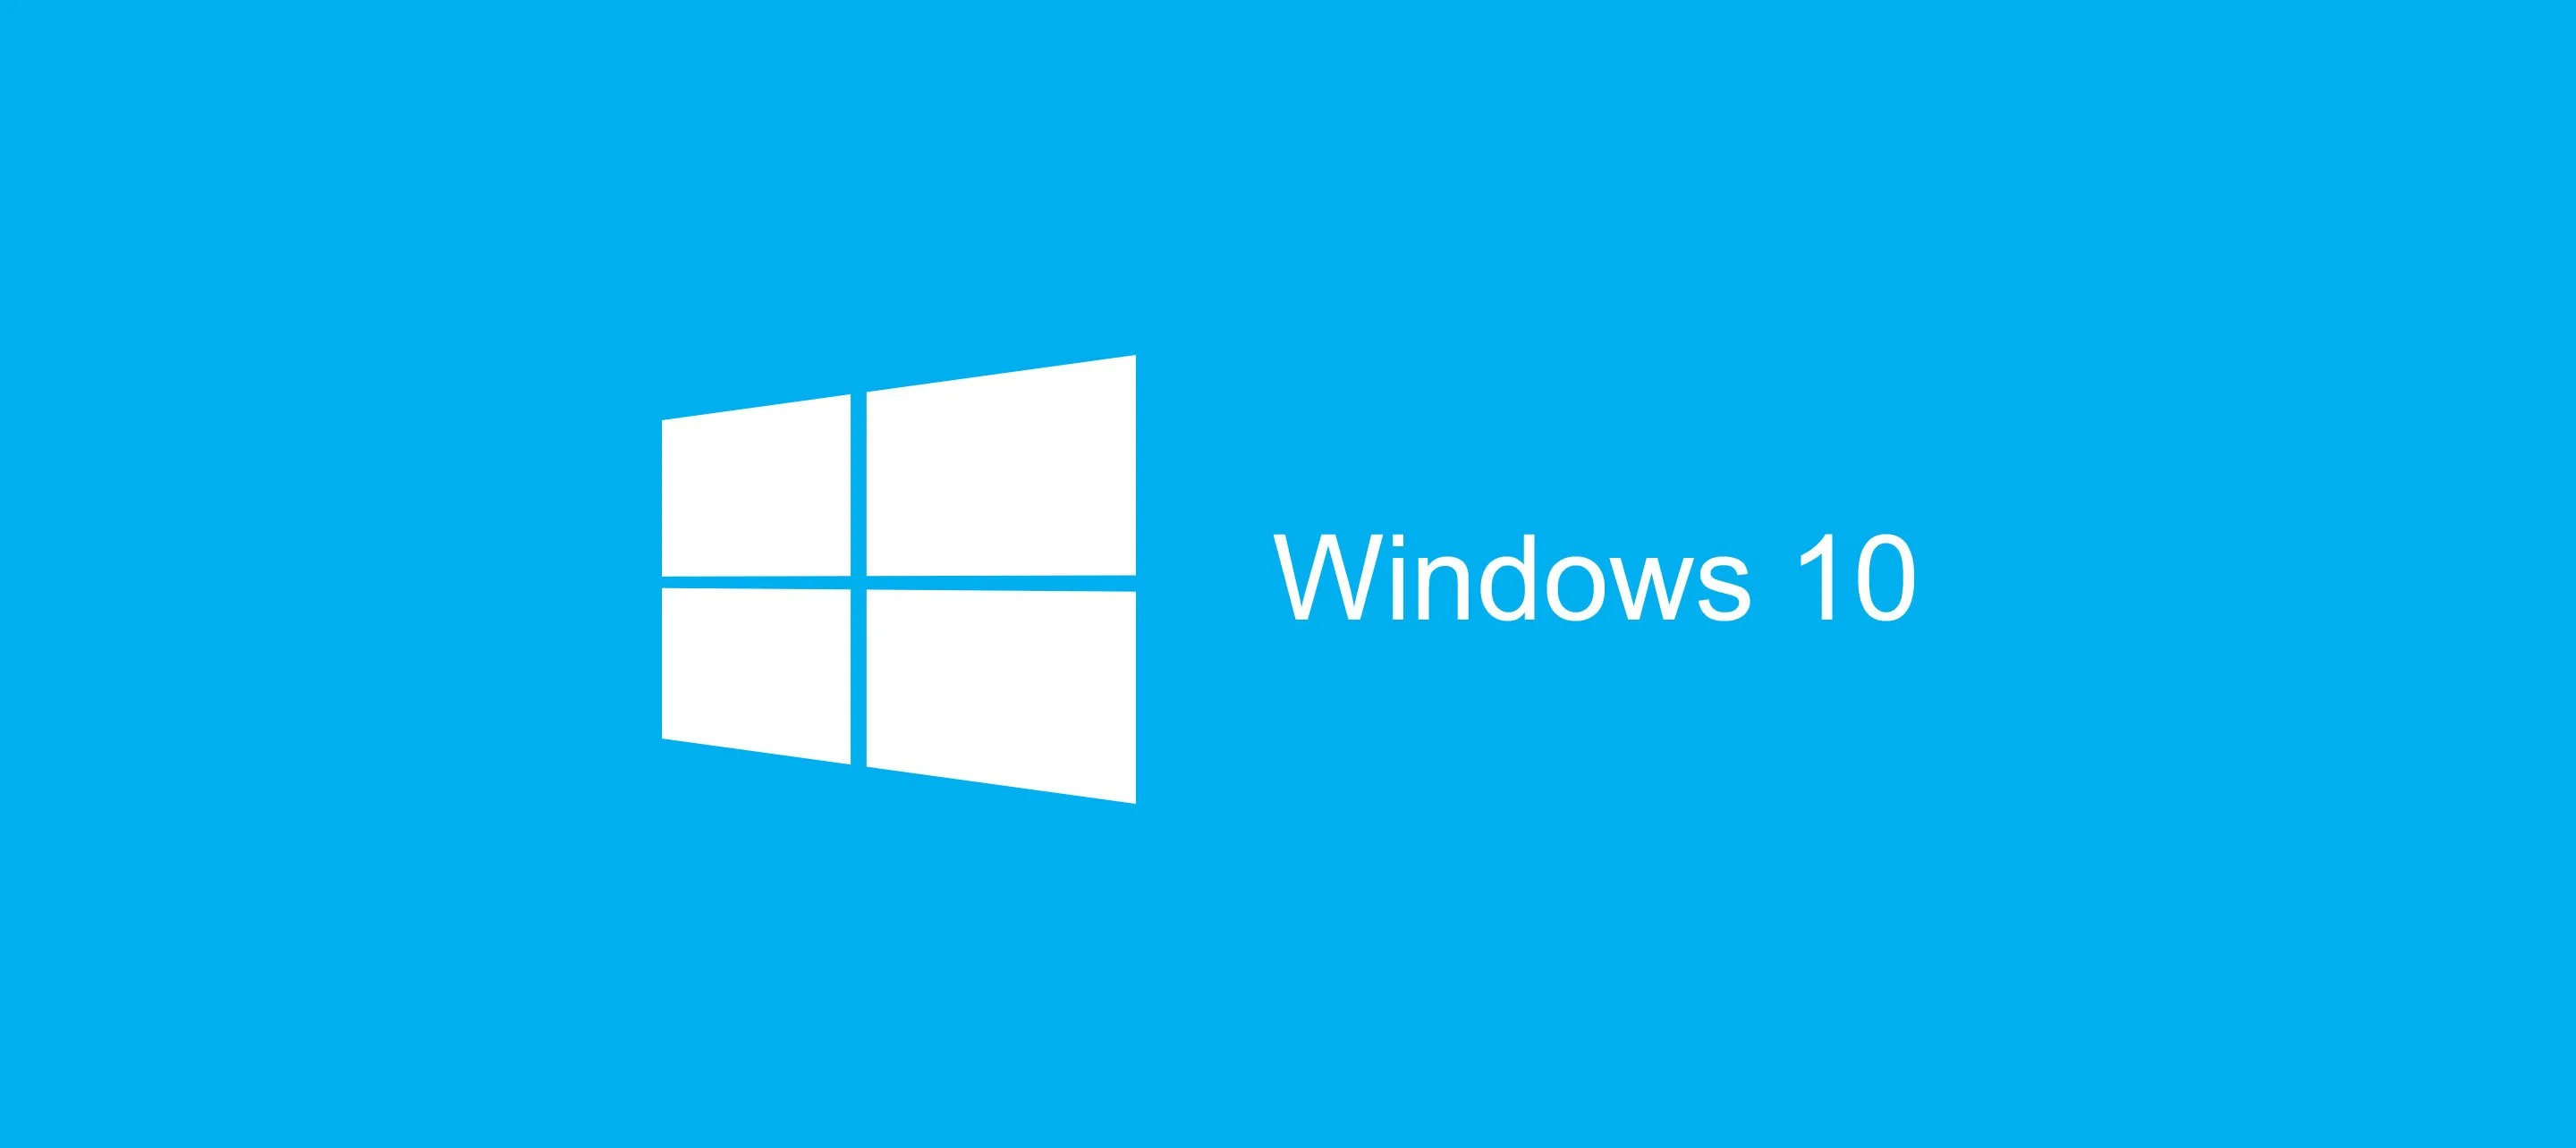 Windows 10 управляет 75 миллионами устройств по всему миру - фото 1